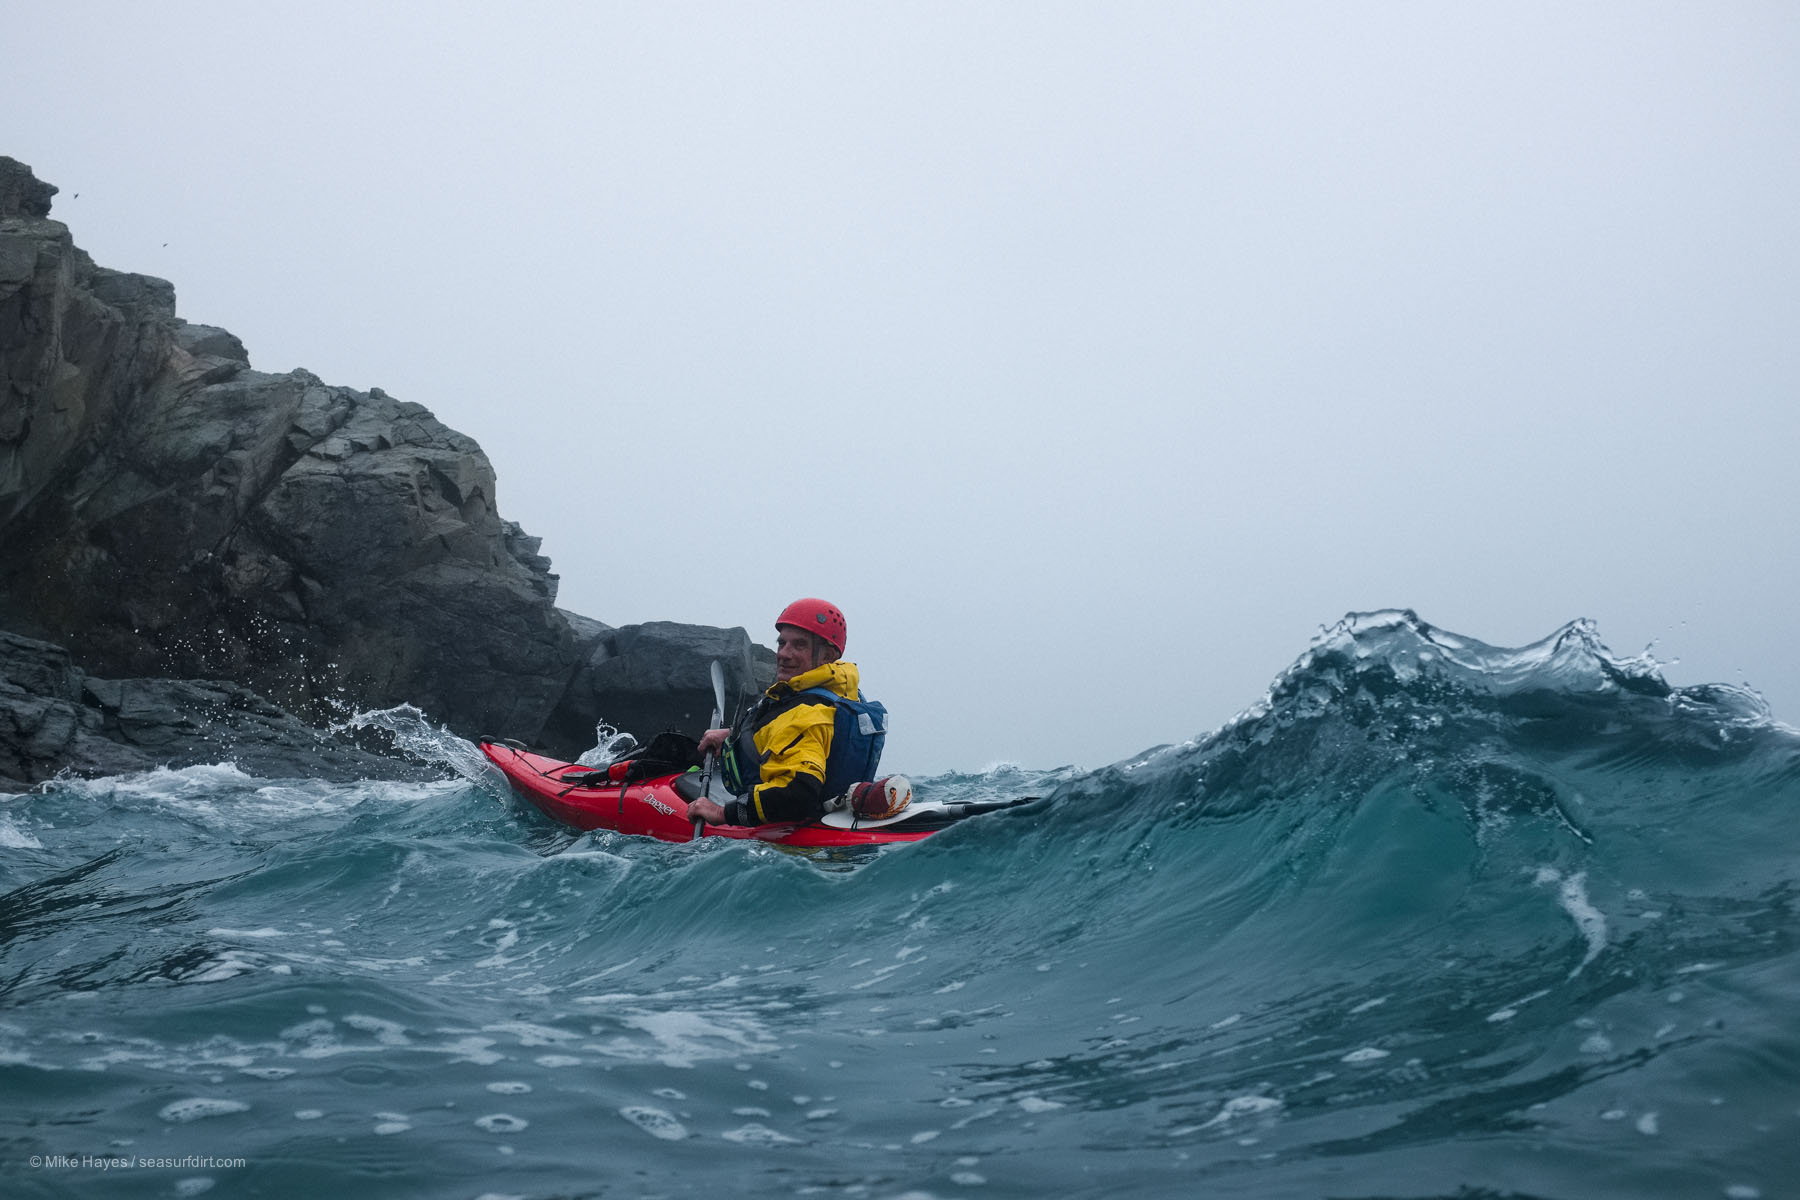 sea kayaker in waves, Cornwall